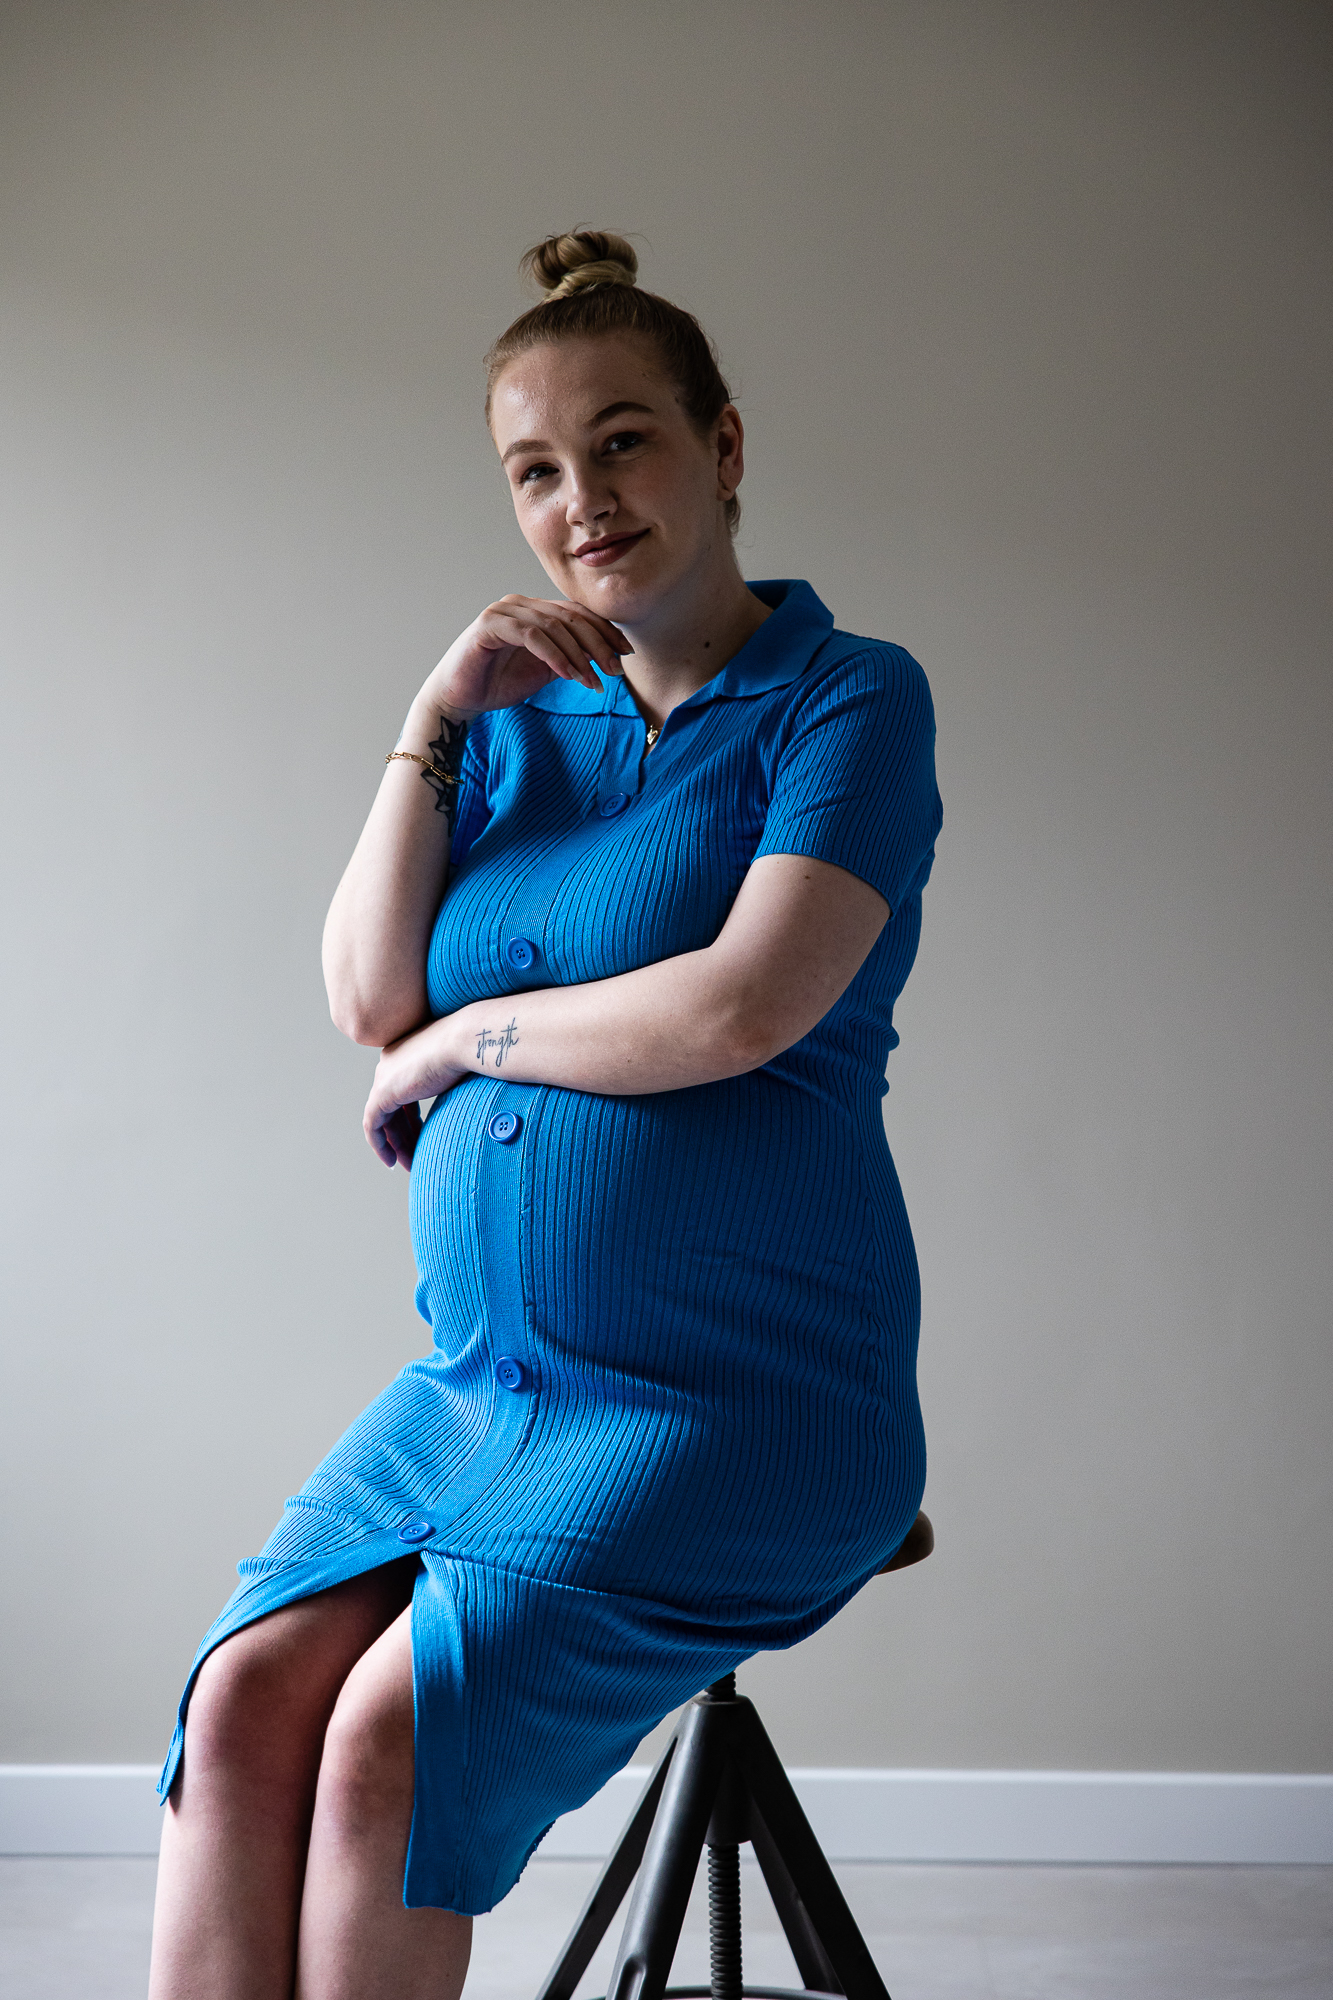 Zwangerschapsshoot in blauwe jurk op kruk door zwangerschapsfotograaf Nickie Fotografie uit Friesland.